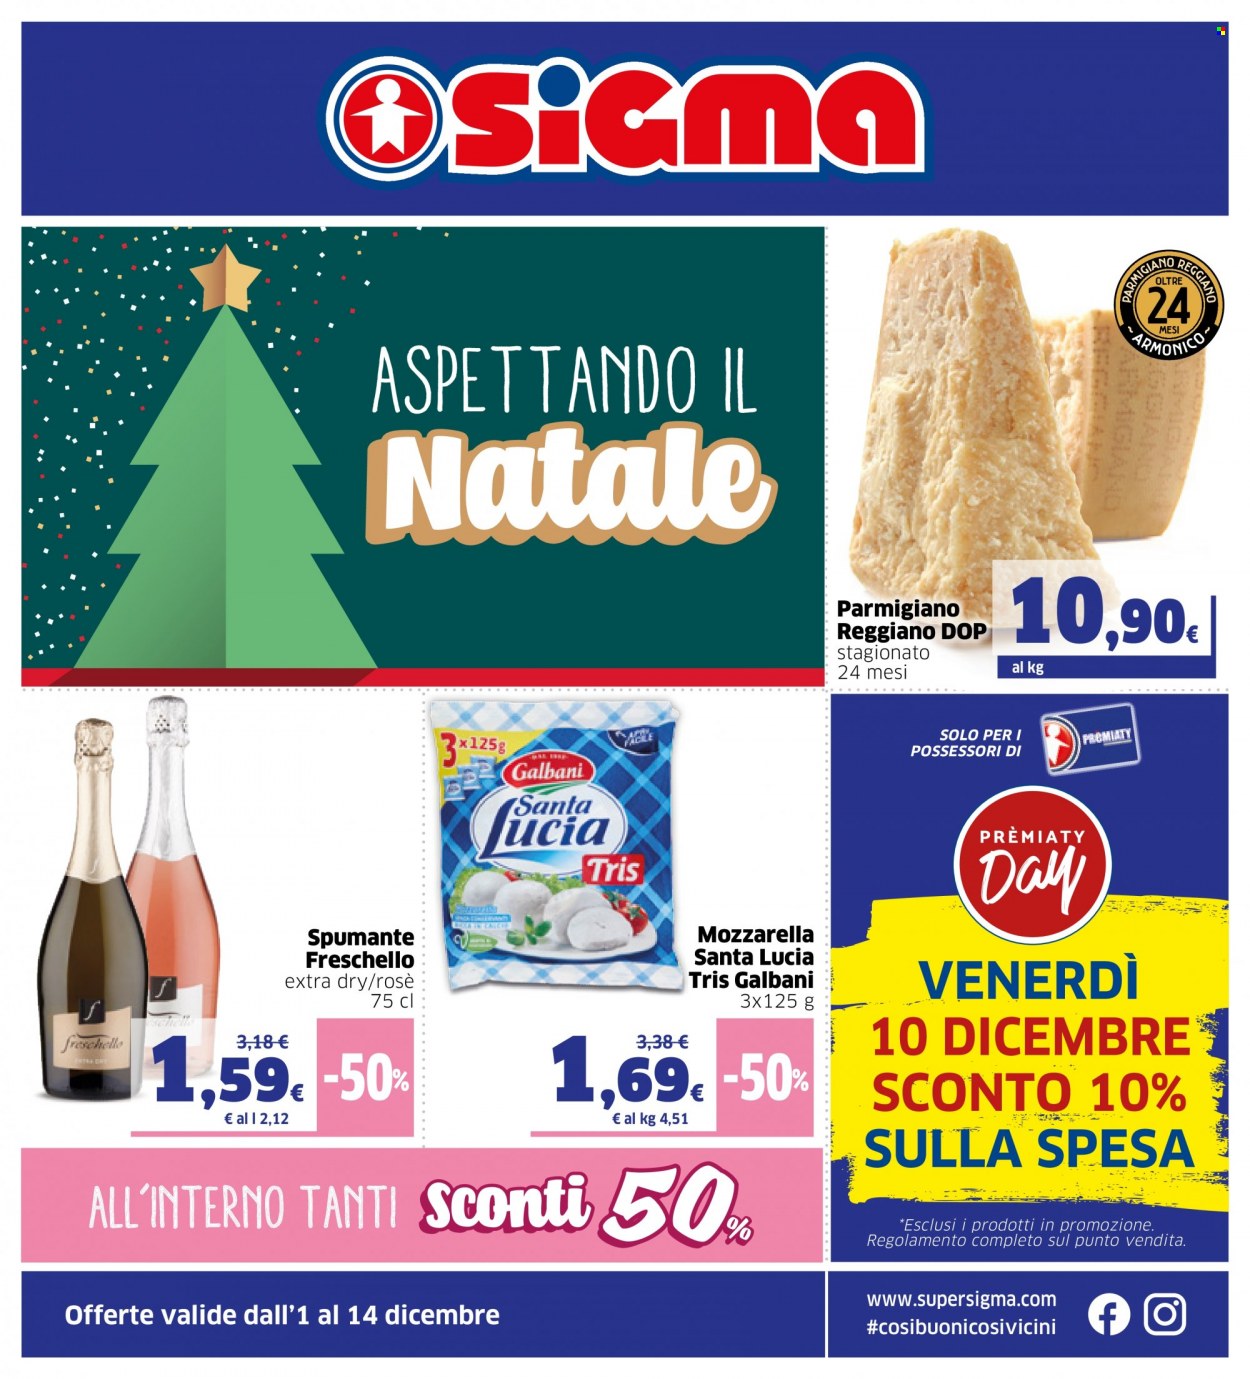 Volantino Sigma - 1/12/2021 - 14/12/2021 - Prodotti in offerta - Galbani, mozzarella, parmigiano, Spumante. Pagina 1.